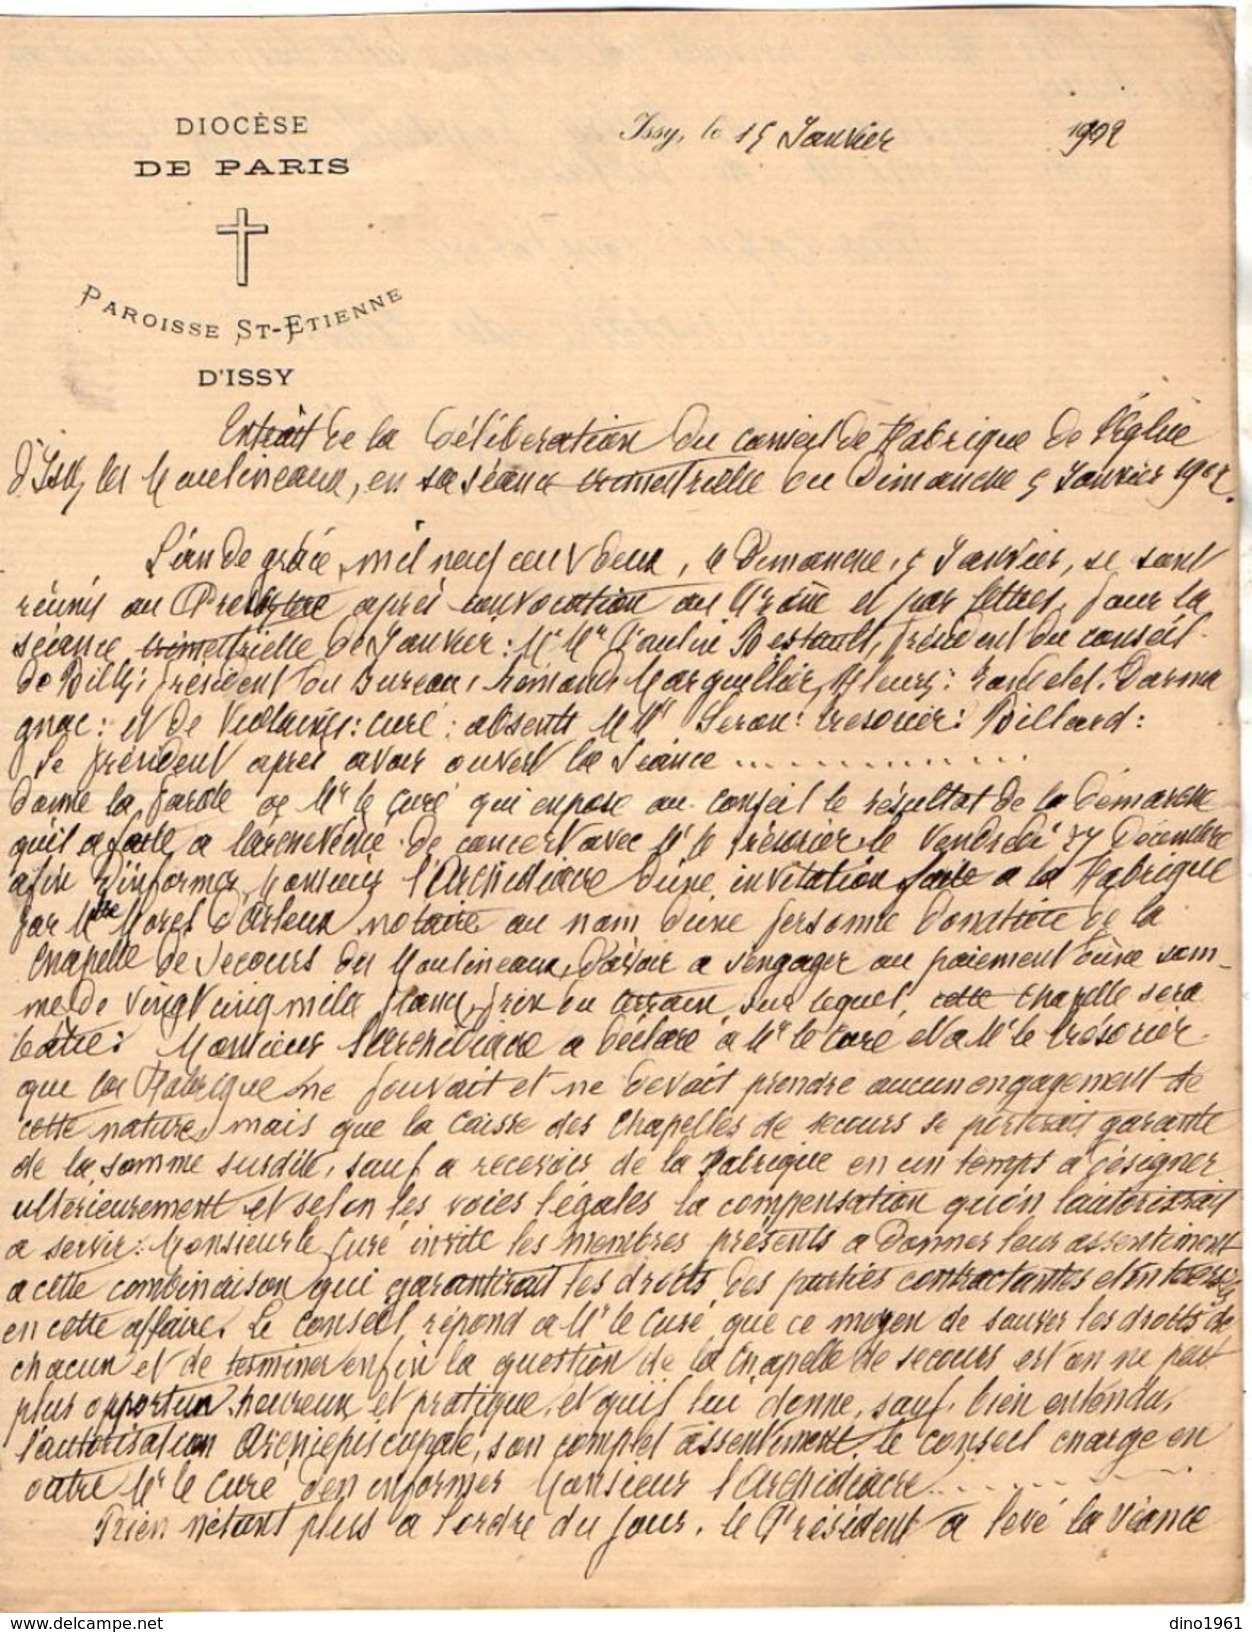 VP10.711 - Lot de 7 Lettres de Mr le Curé VIOLAINE au sujet de la construction de la Nouvelle Chapelle d'ISSY